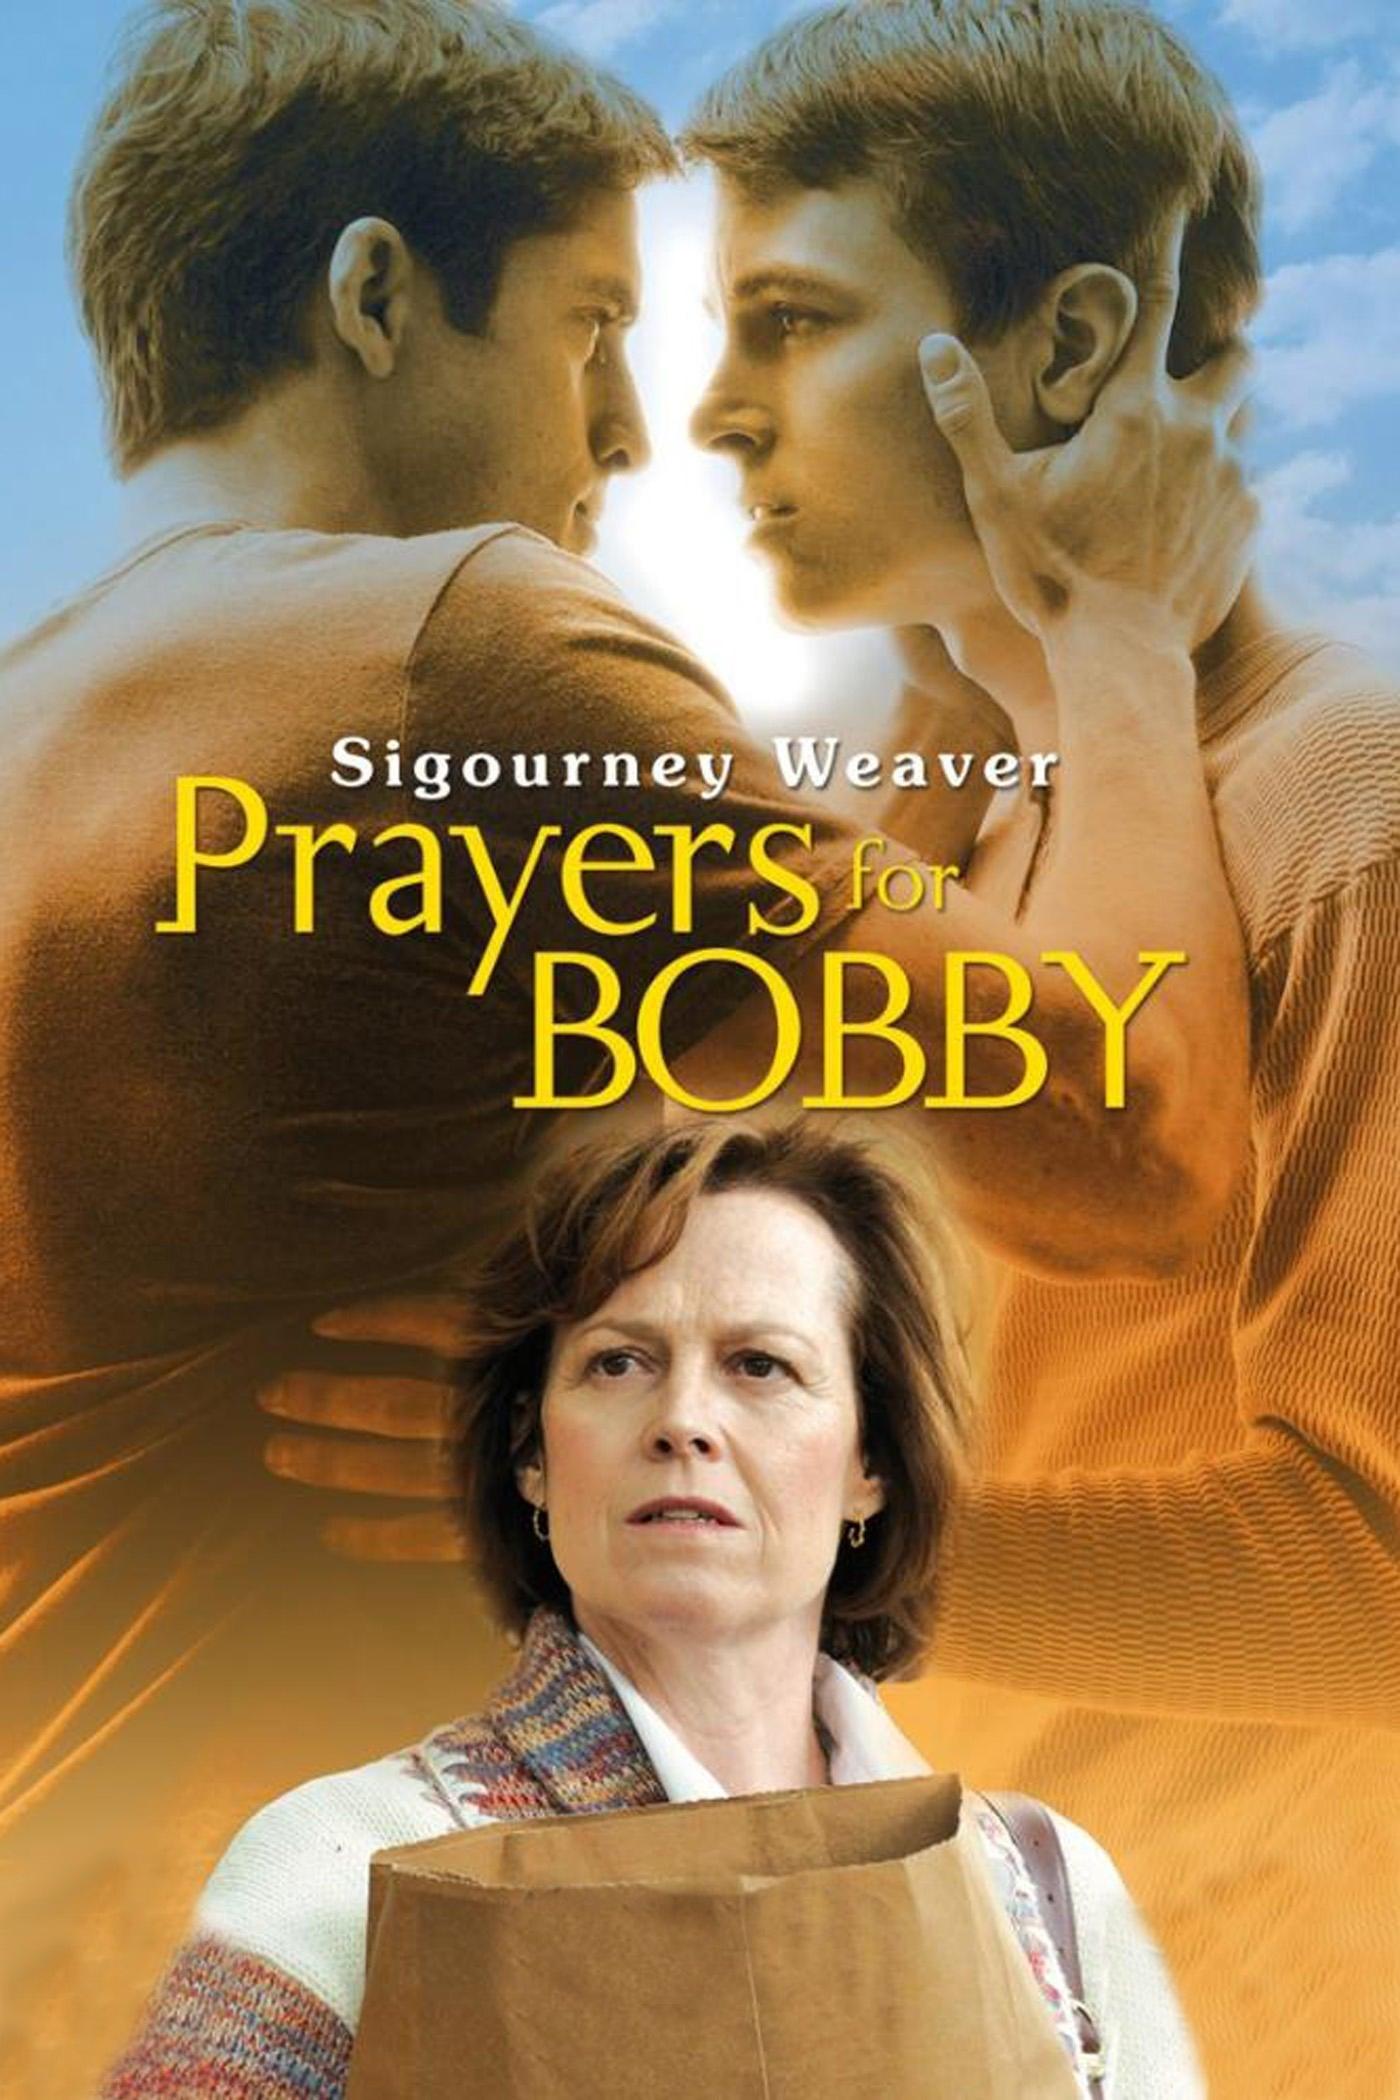 Prayers for Bobby poster